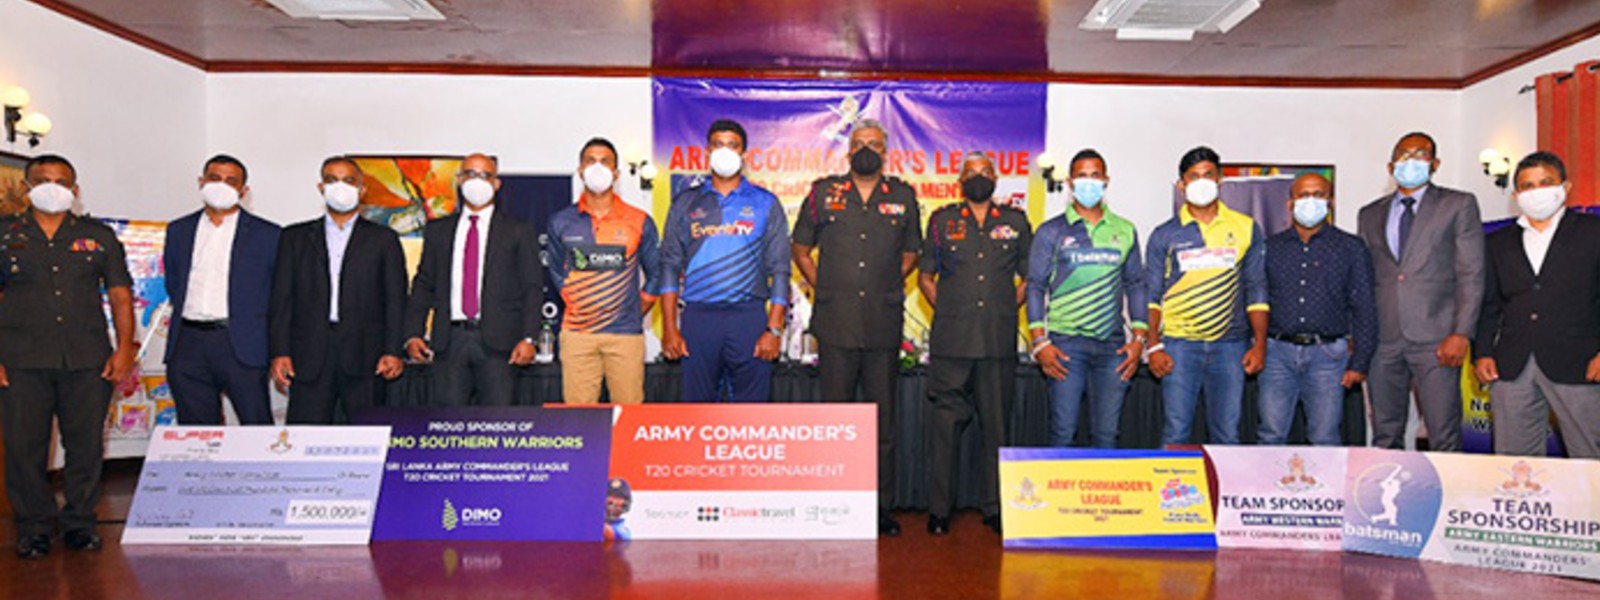 Army Commander’s League T20 Cricket Tournament